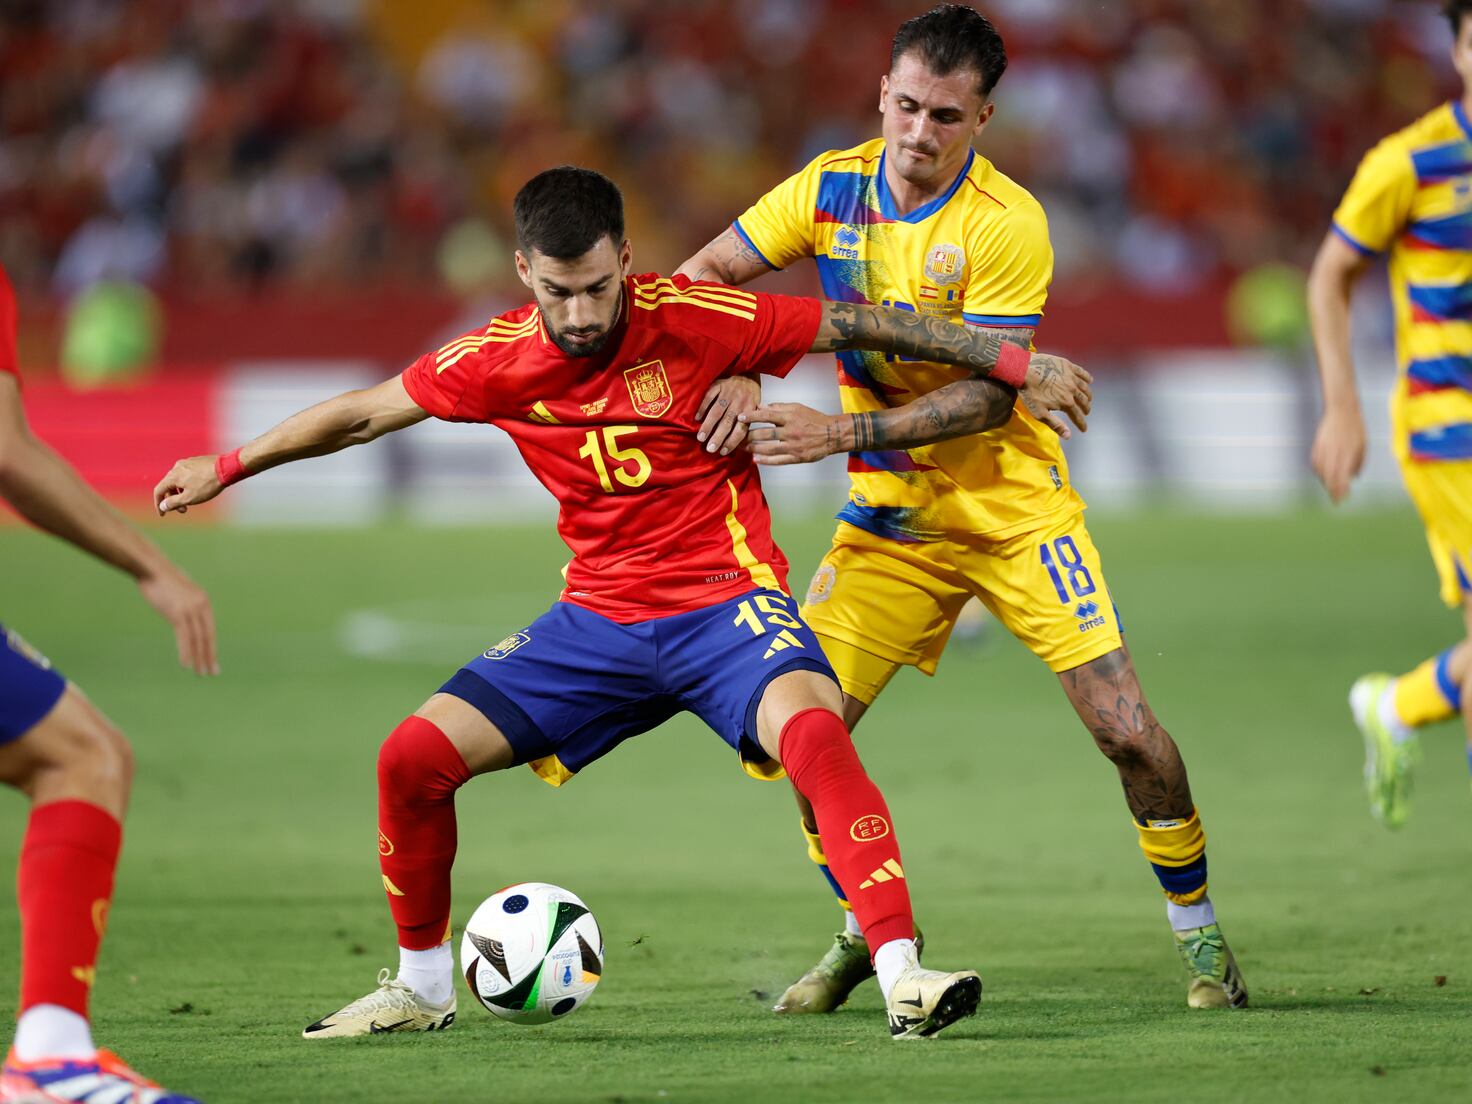 España 5-0 Andorra: resumen, goles y resultado - AS.com